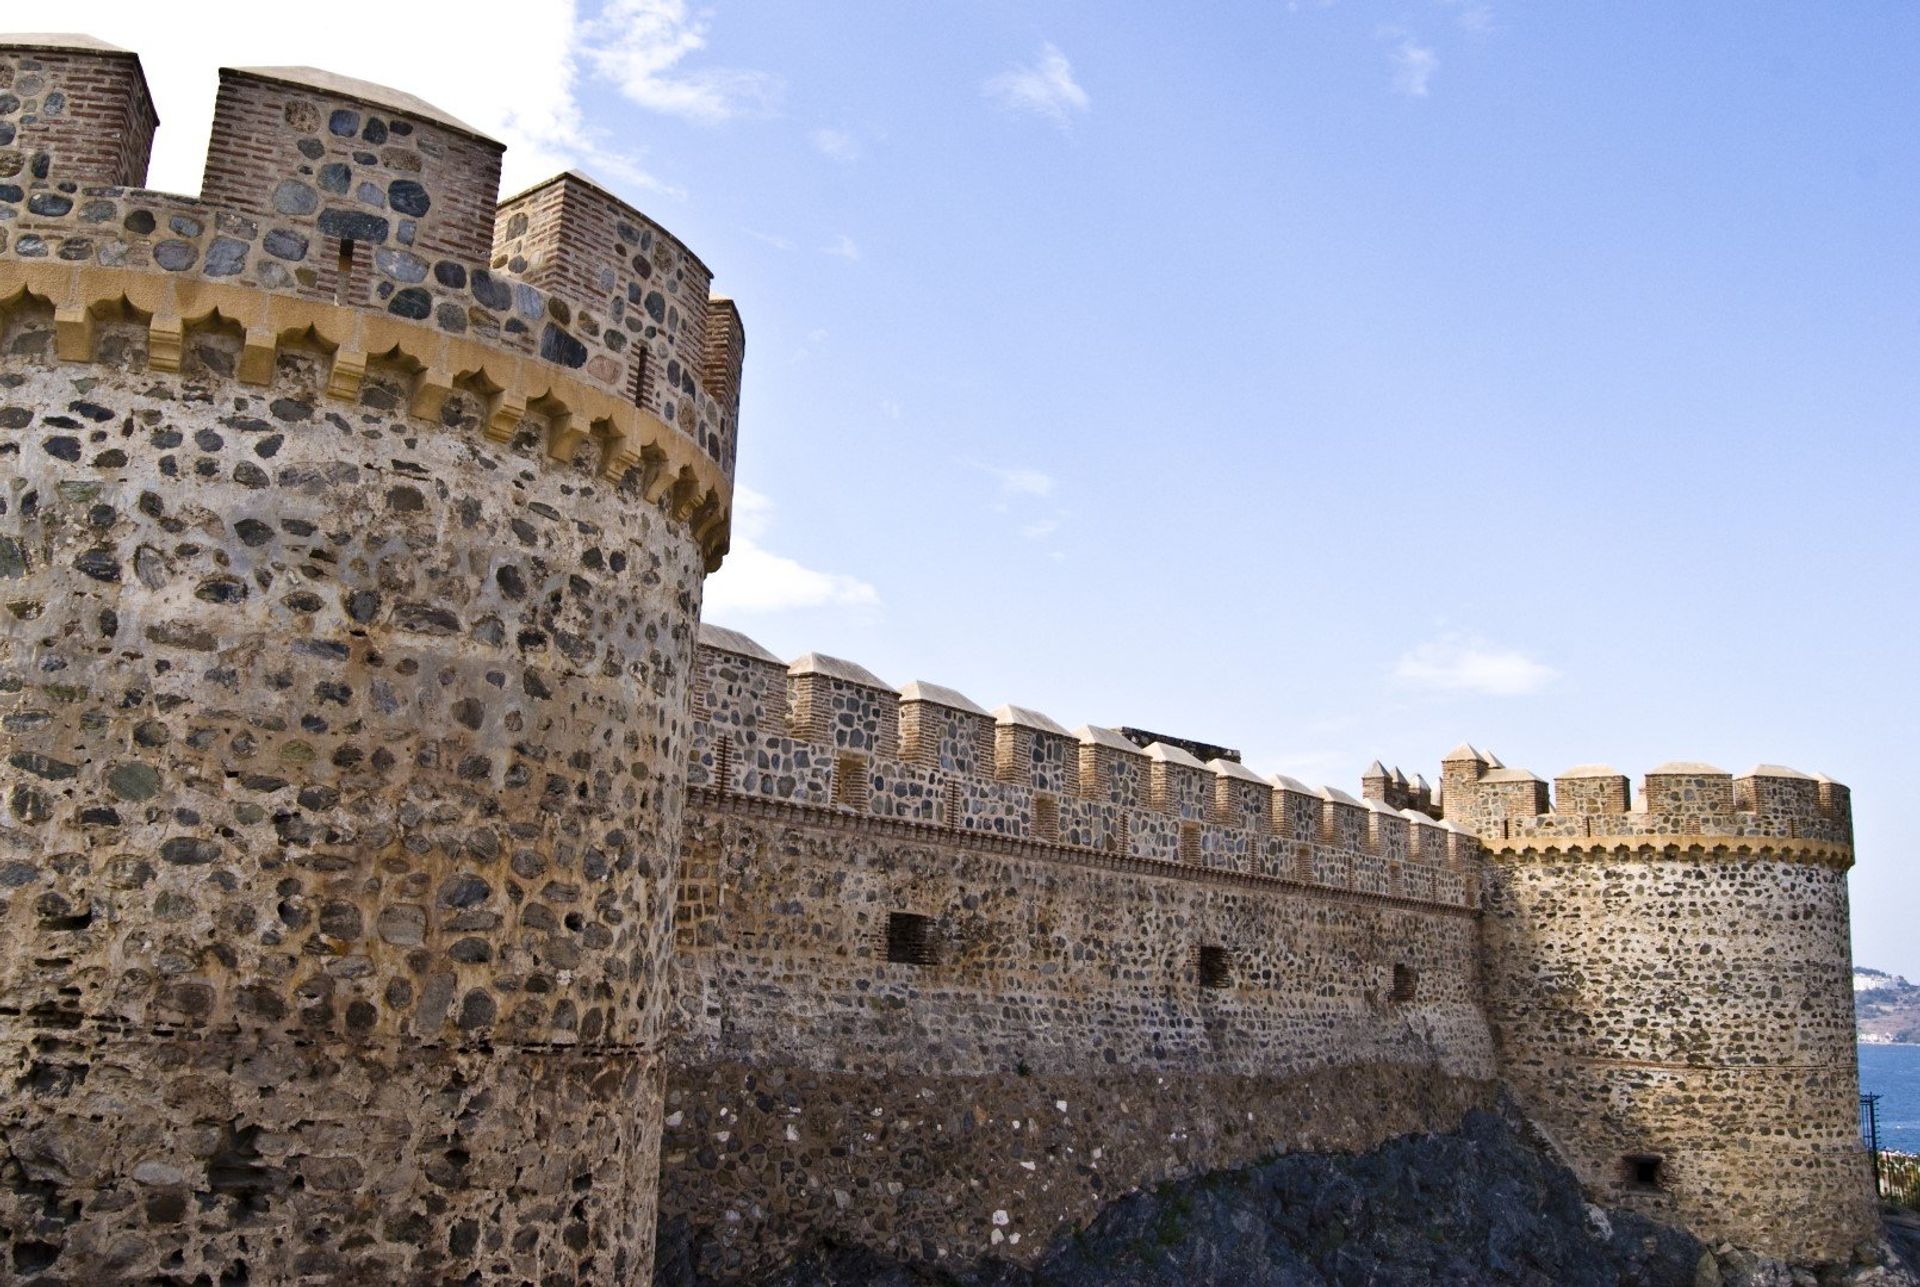 The castle walls of San Miguel in Almunecar